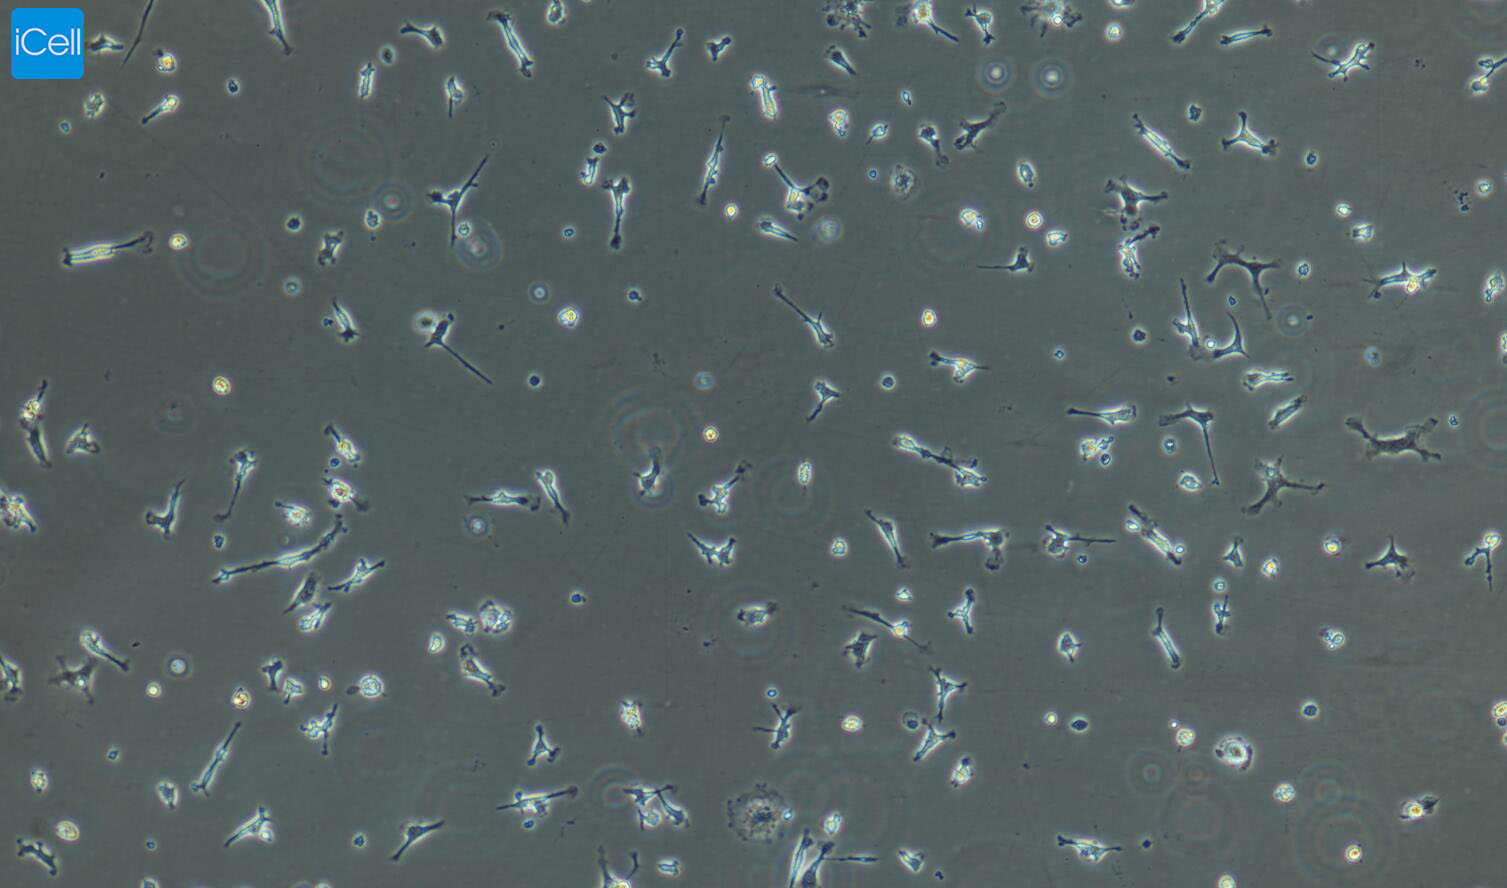 小鼠肺巨噬细胞/SD大鼠神经胶质细胞/猪骨骼肌细胞/免疫荧光鉴定